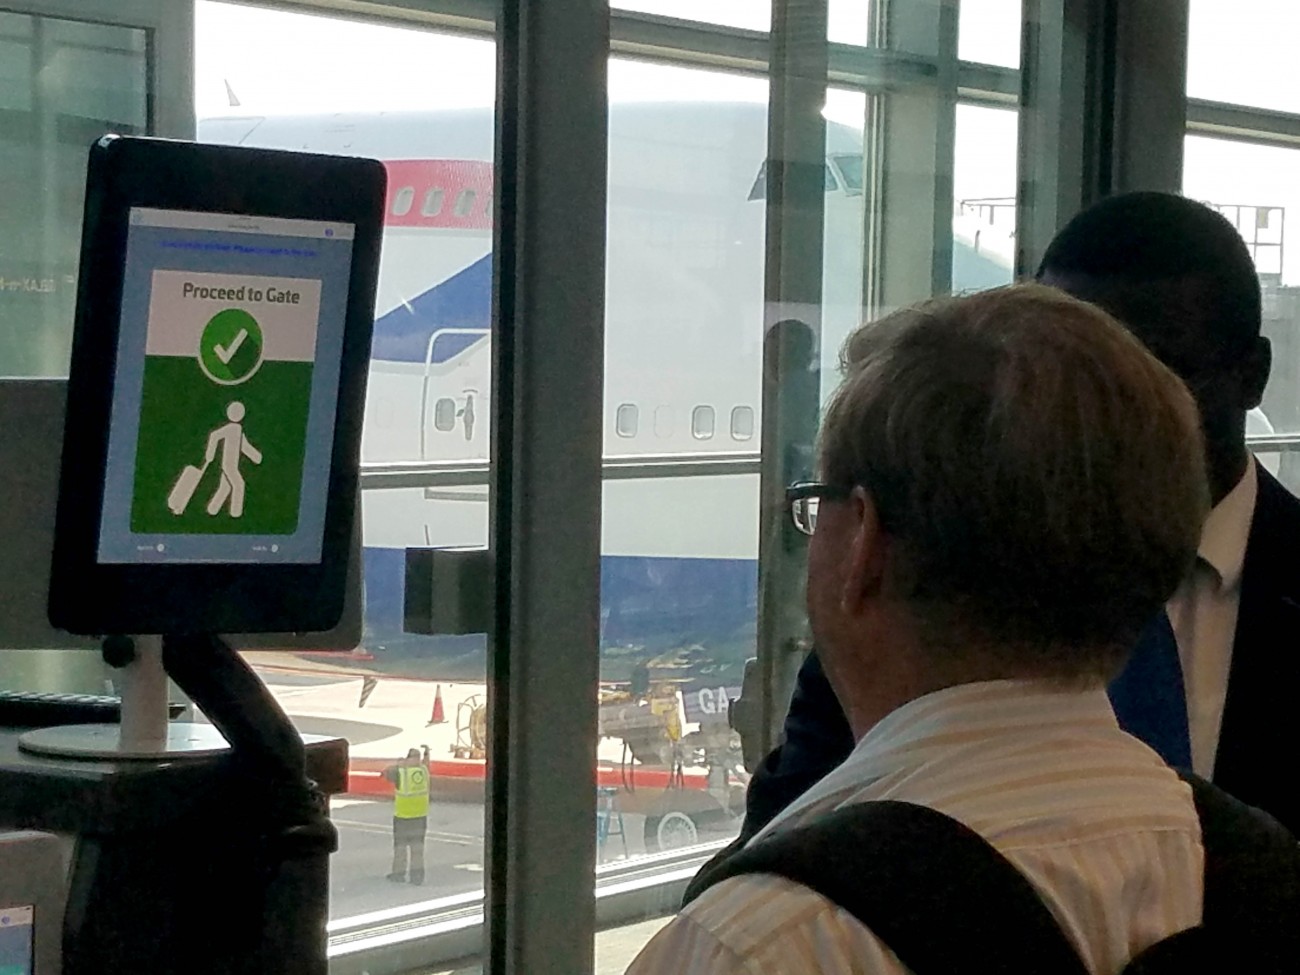 reconocimiento facial aeropuerto dulles tarjetas de embarque